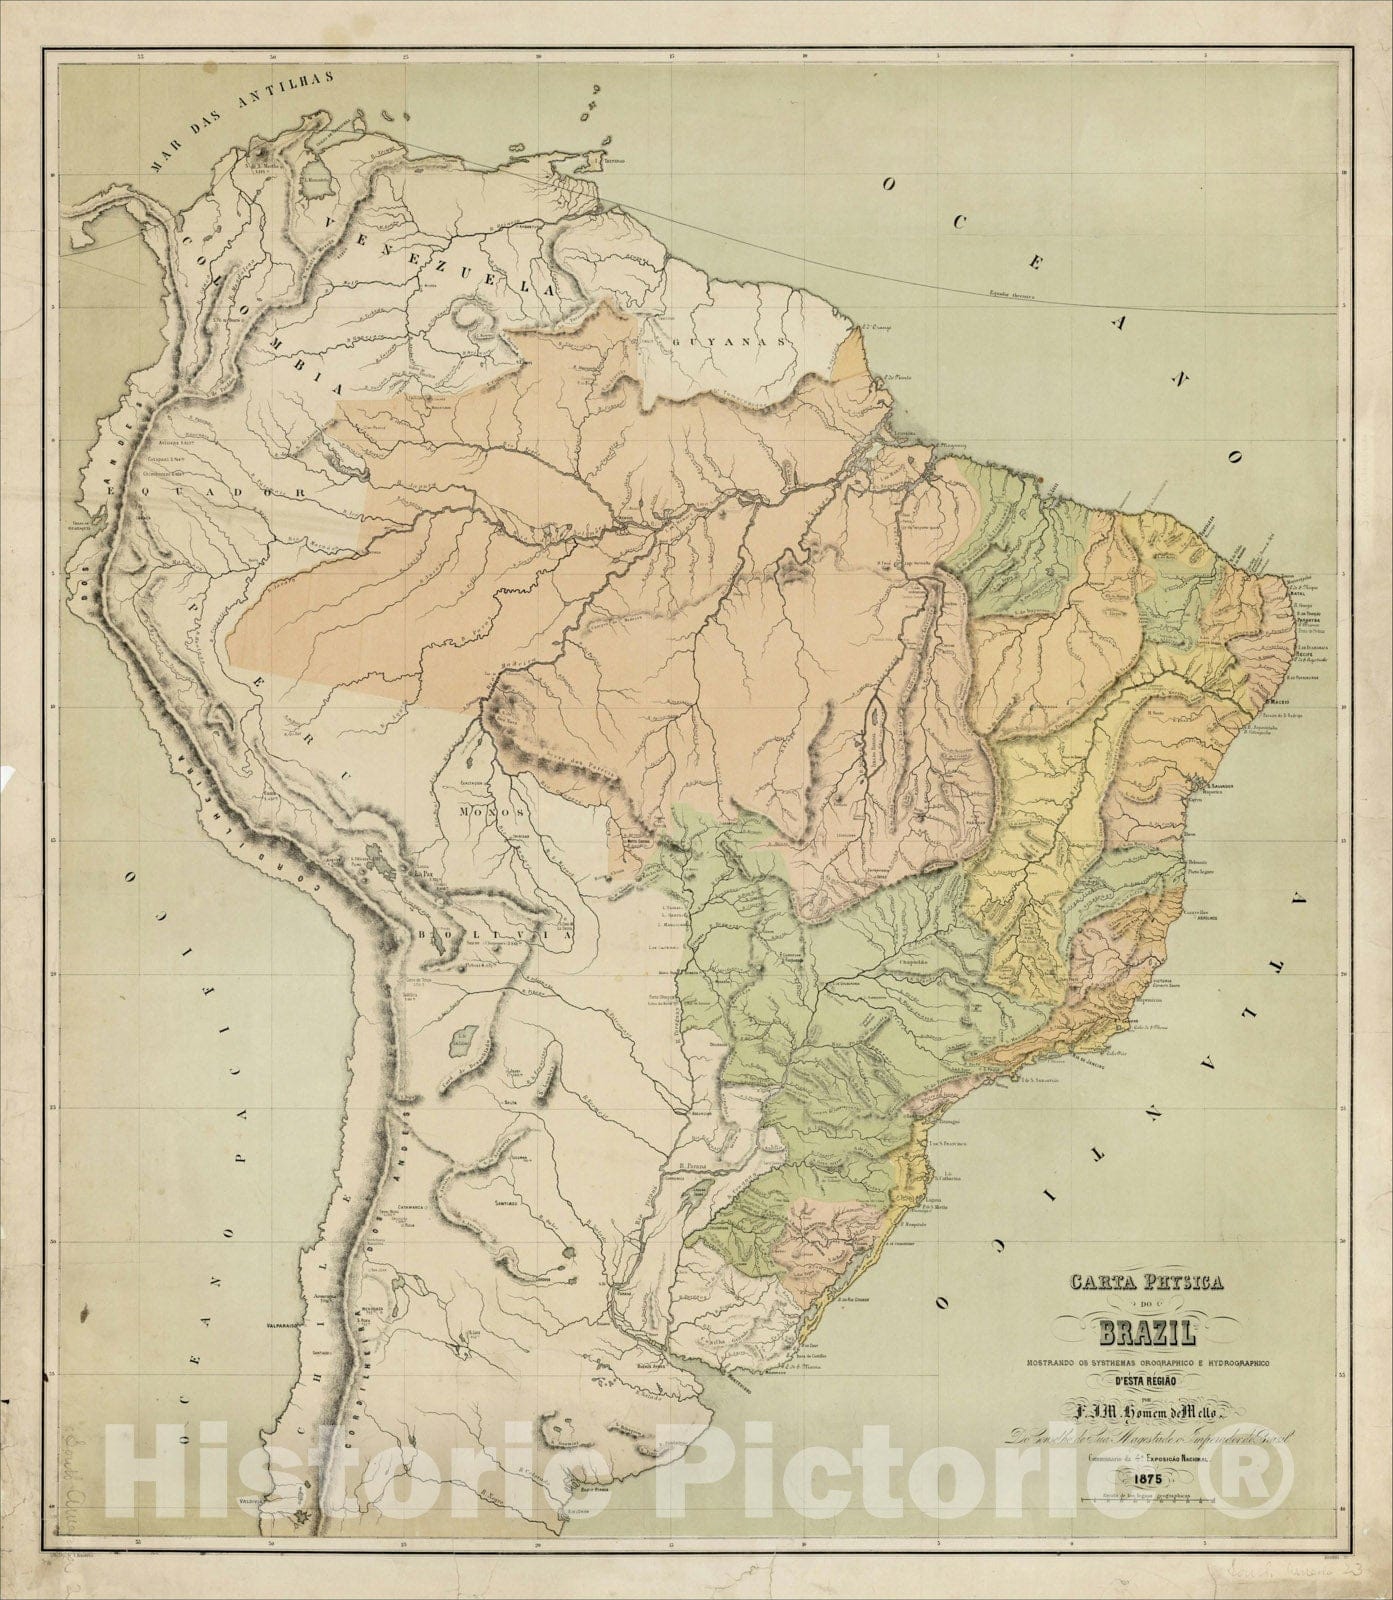 Historic Map : Carta Physica do Brazil Mostrando os Systhemas Orographico e Hydrographico D'Esta Regiao Por F.J.M. Homem de Mello., 1875, , Vintage Wall Art